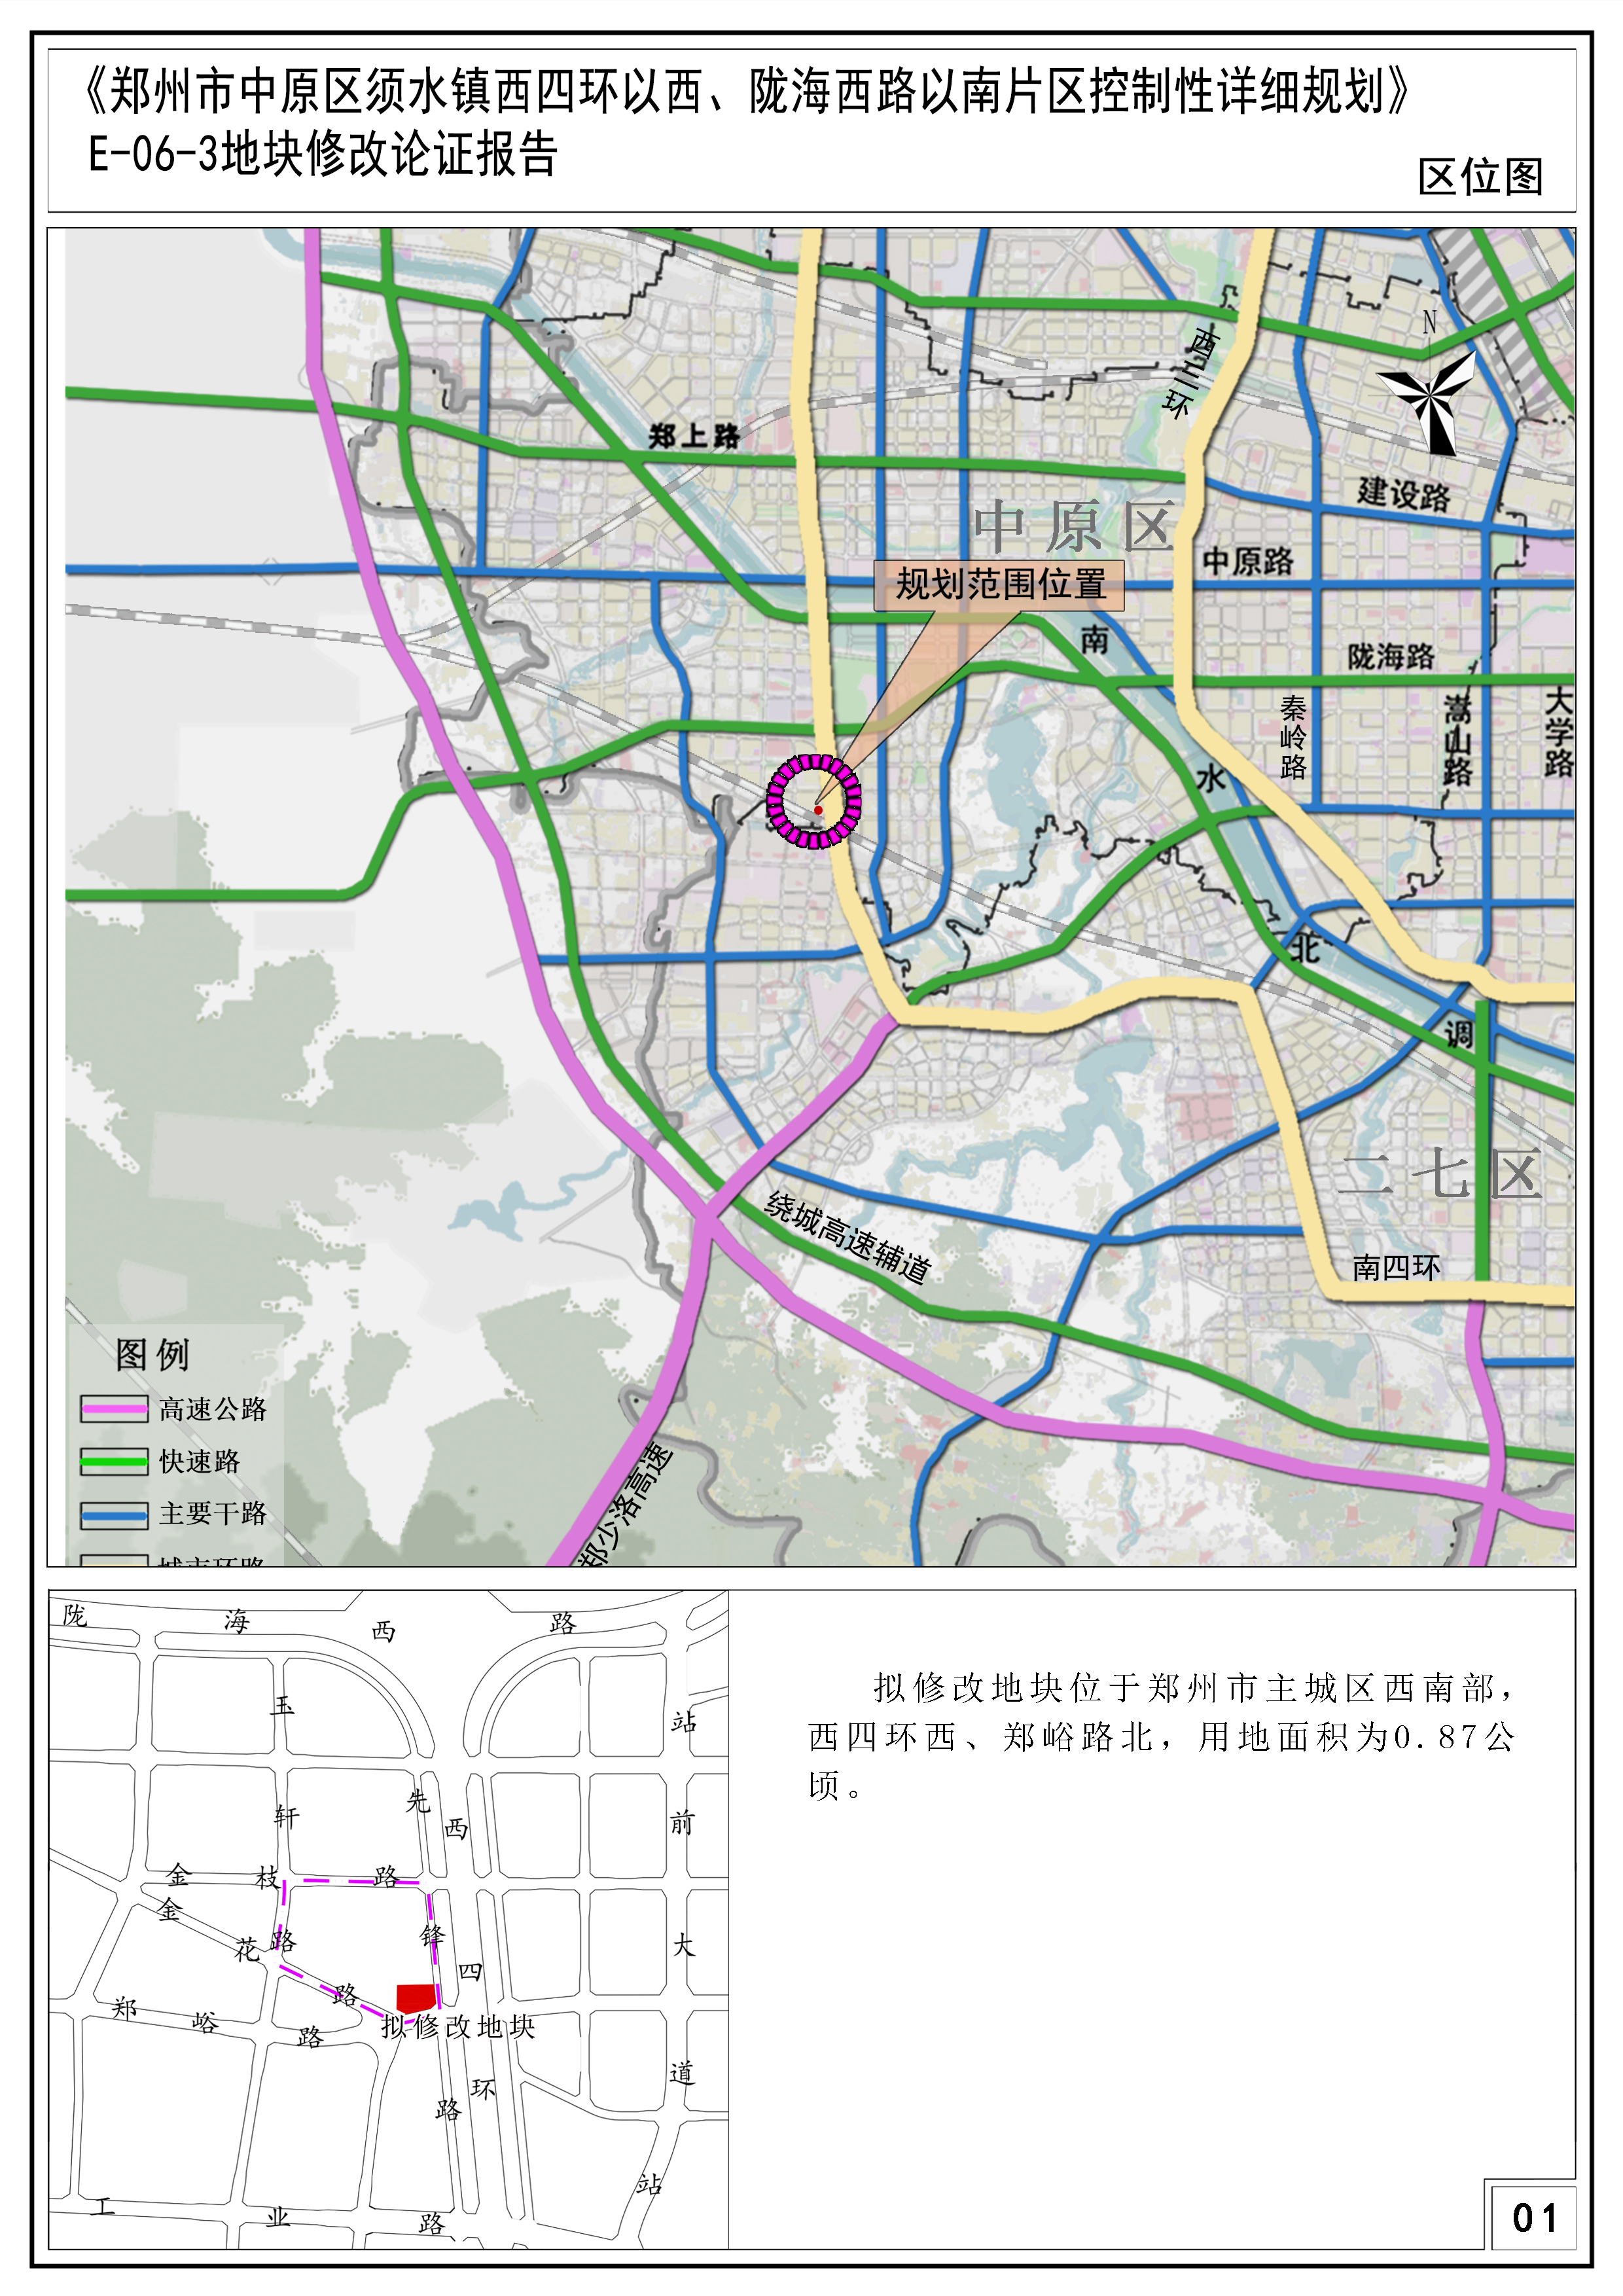 《郑州市中原区须水镇西四环以西、陇海西路以南片区控制性详细规划》E-06-3地块修改论证报告